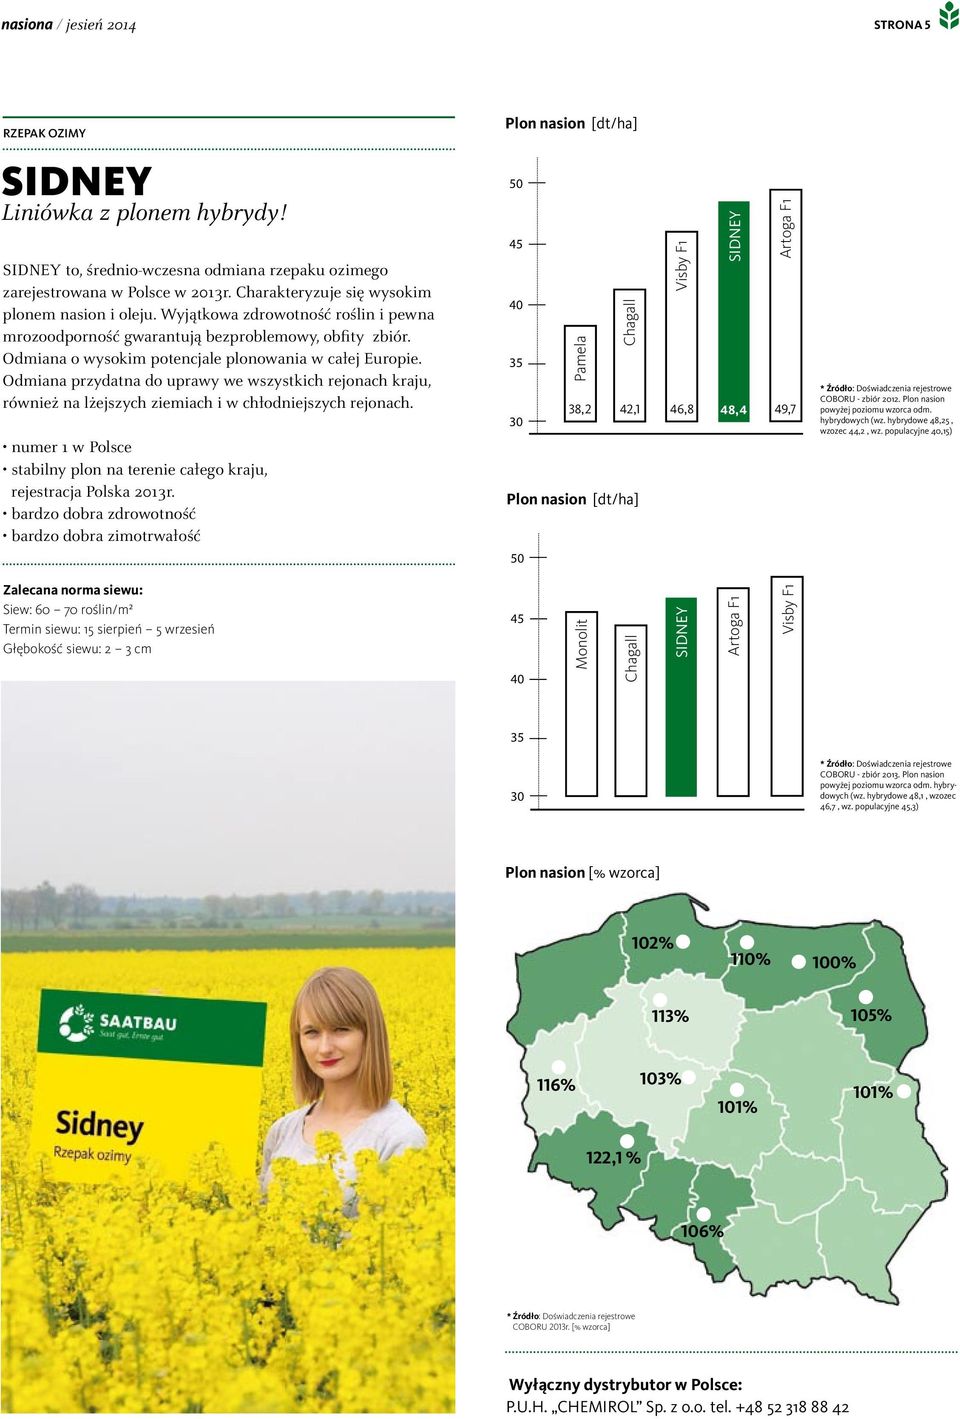 Odmiana przydatna do uprawy we wszystkich rejonach kraju, również na lżejszych ziemiach i w chłodniejszych rejonach. rejestracja Polska 2013r.